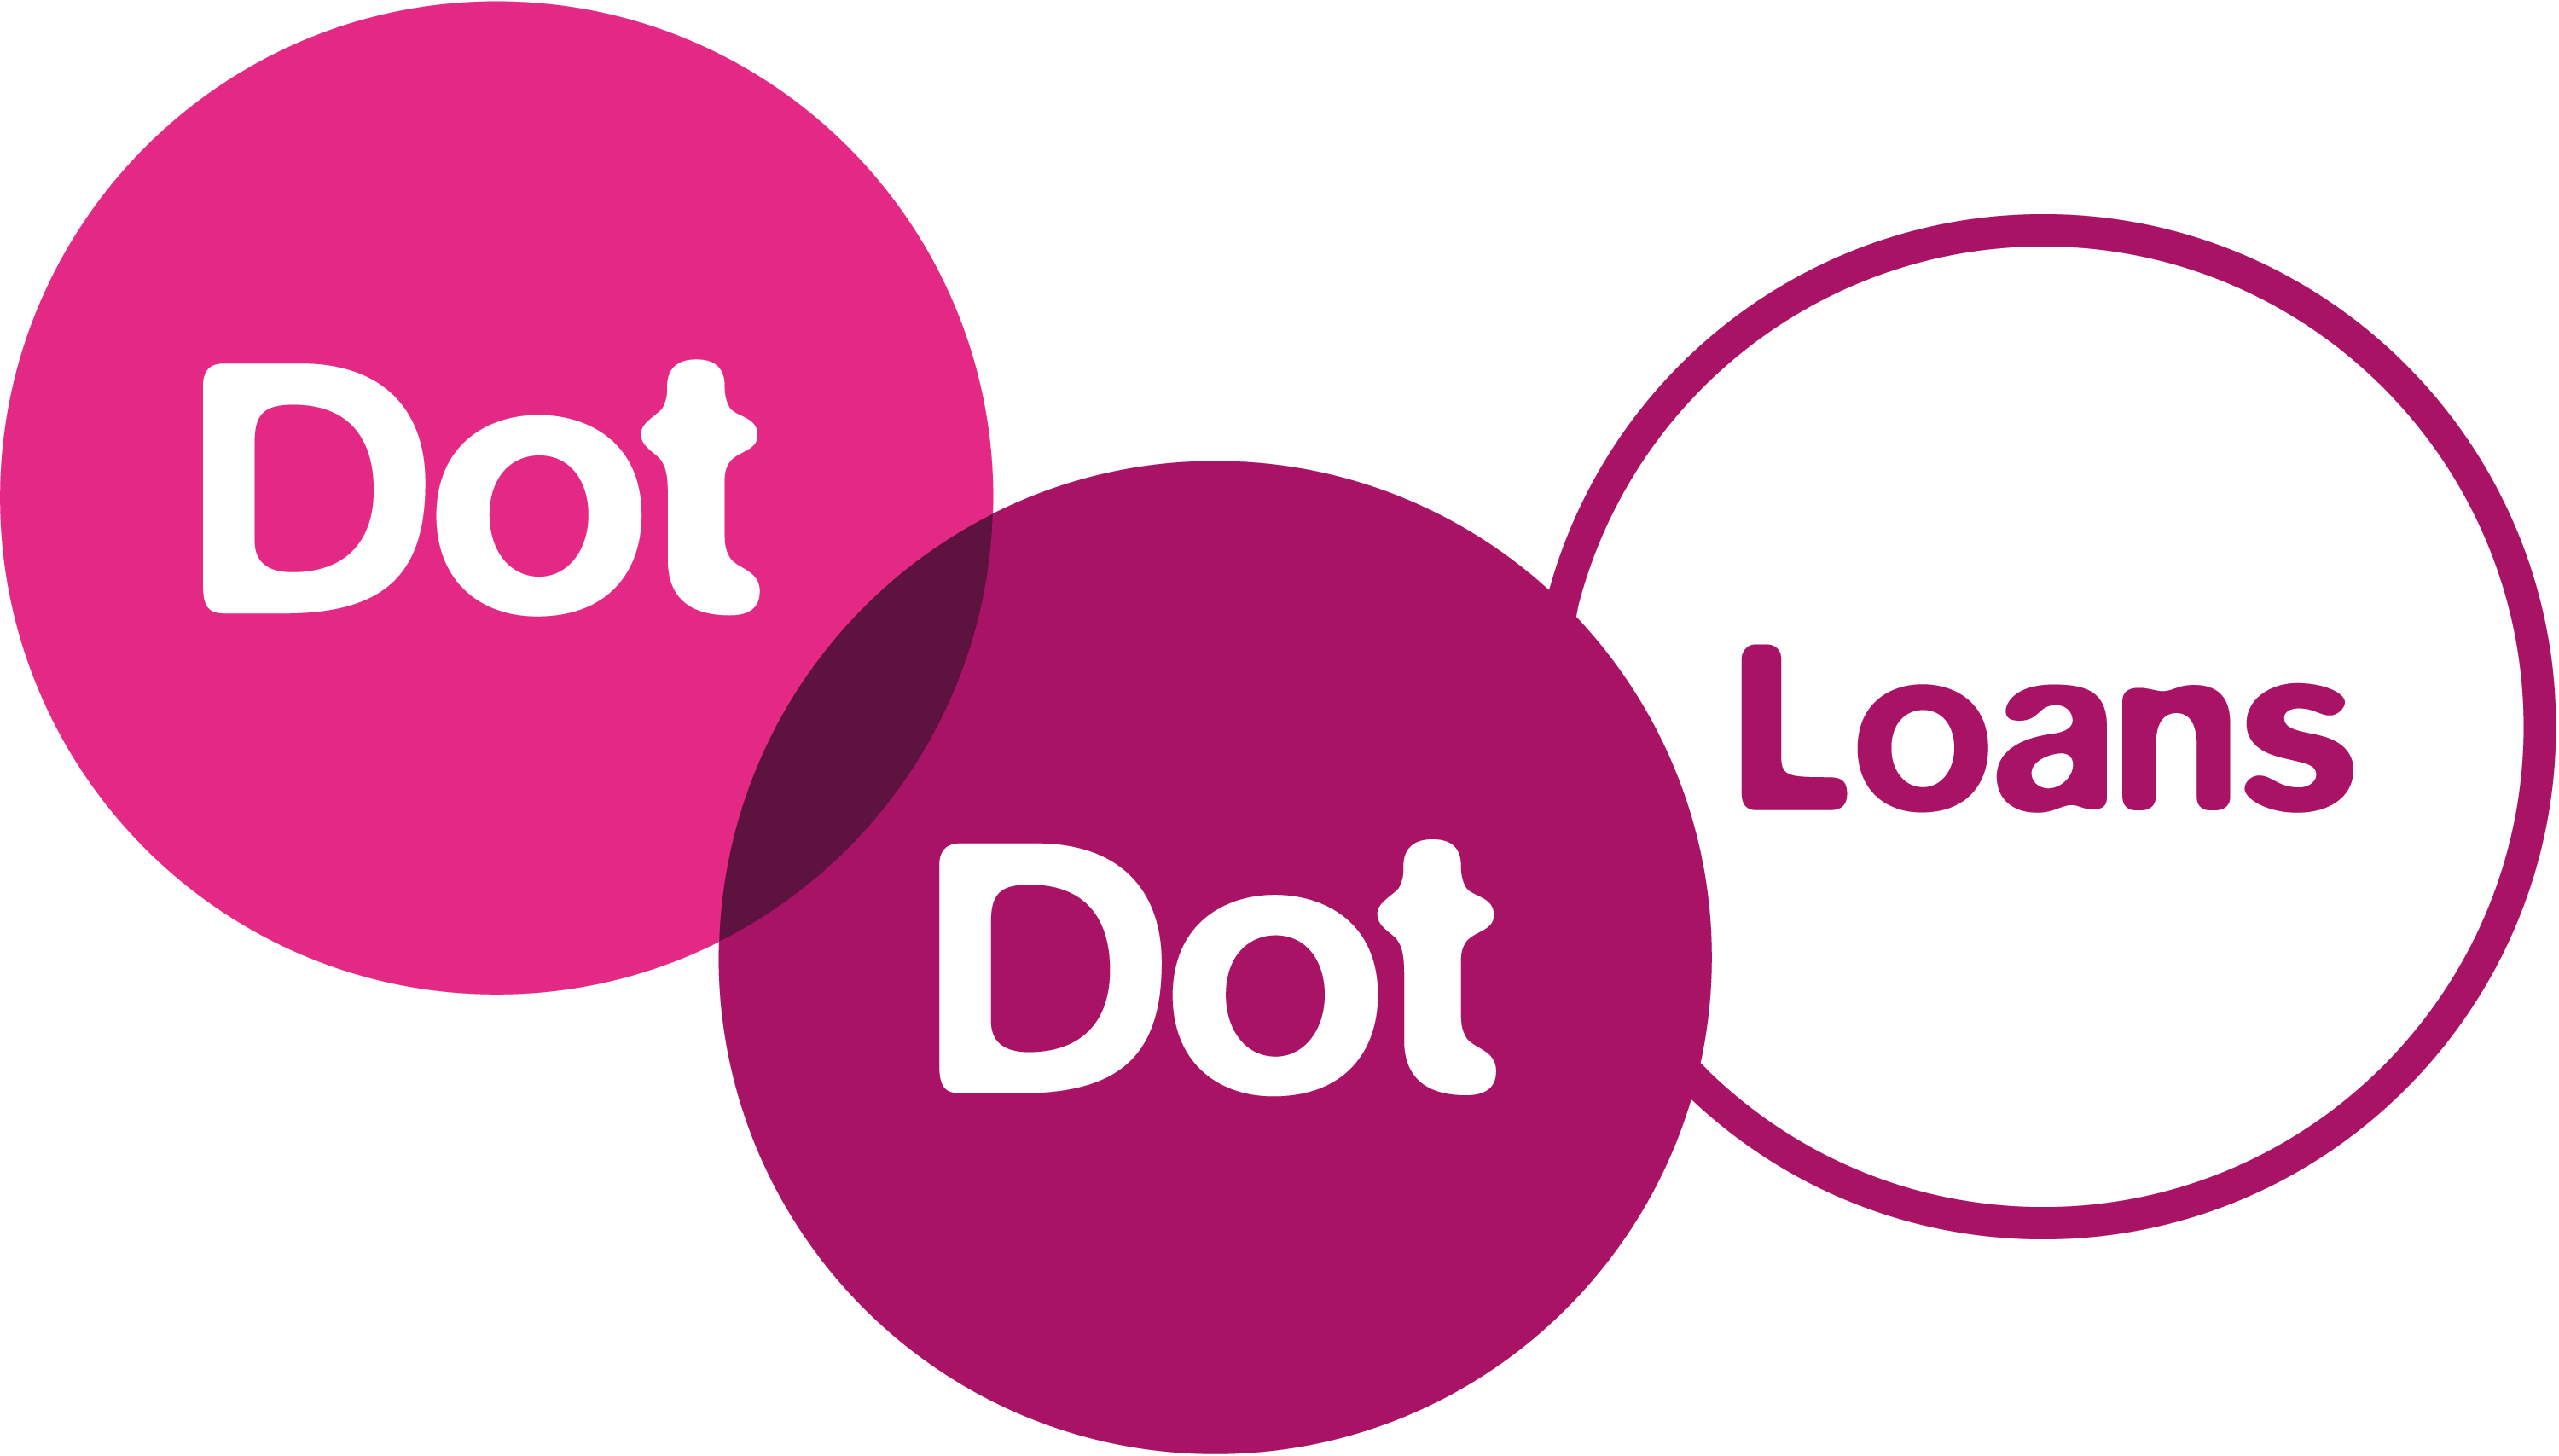 Dot Dot Loans 02